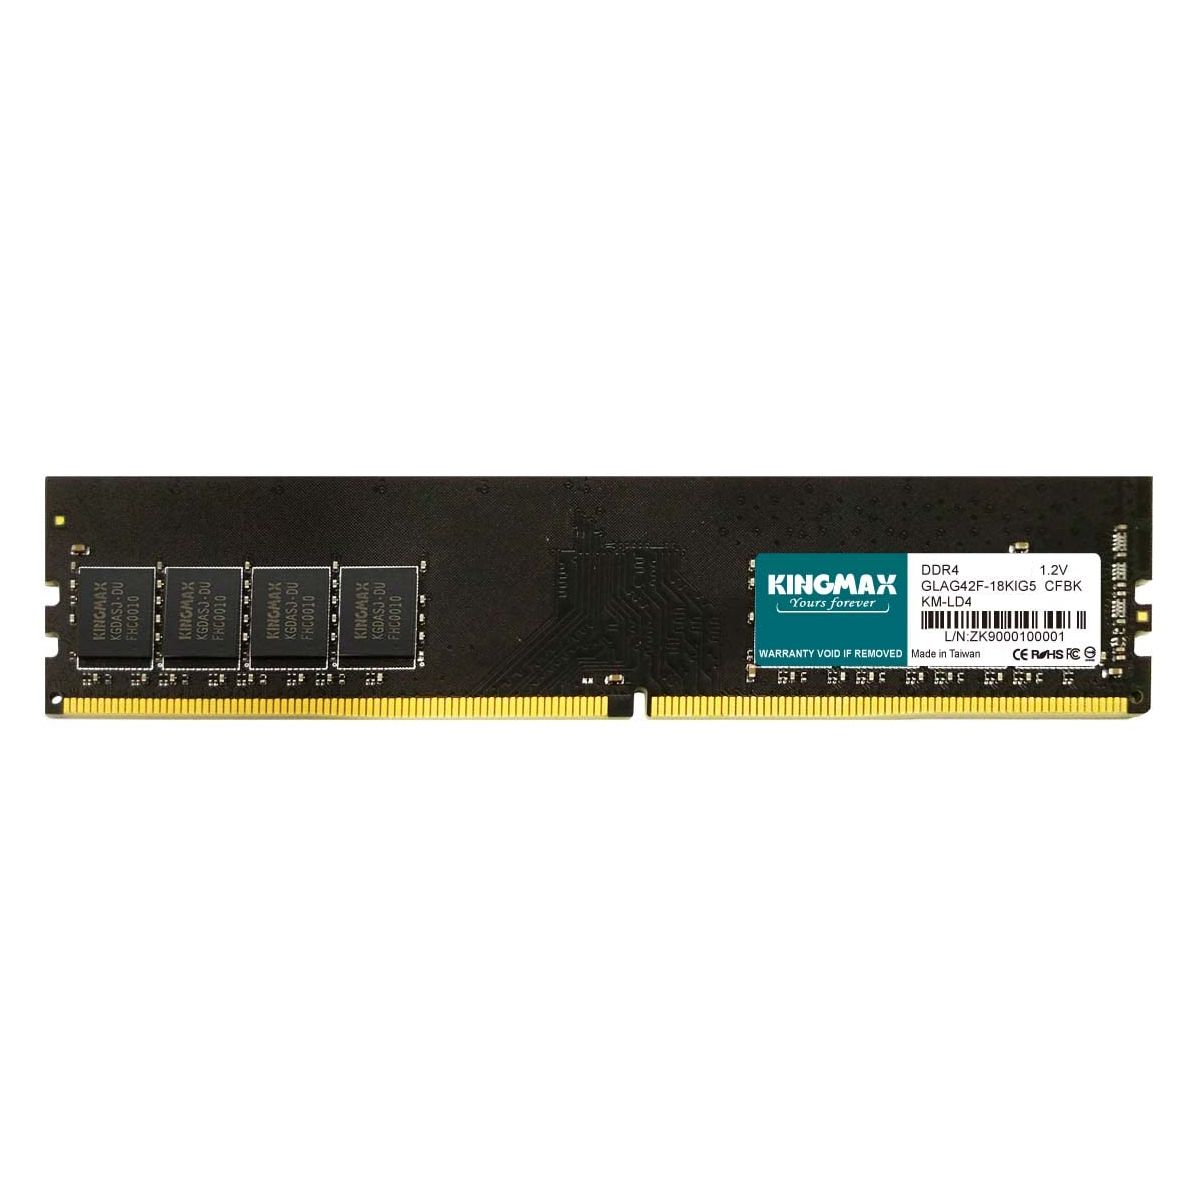 MEMORY DIMM 8GB PC25600 DDR4/KM-LD4-3200-8GS KI..._1